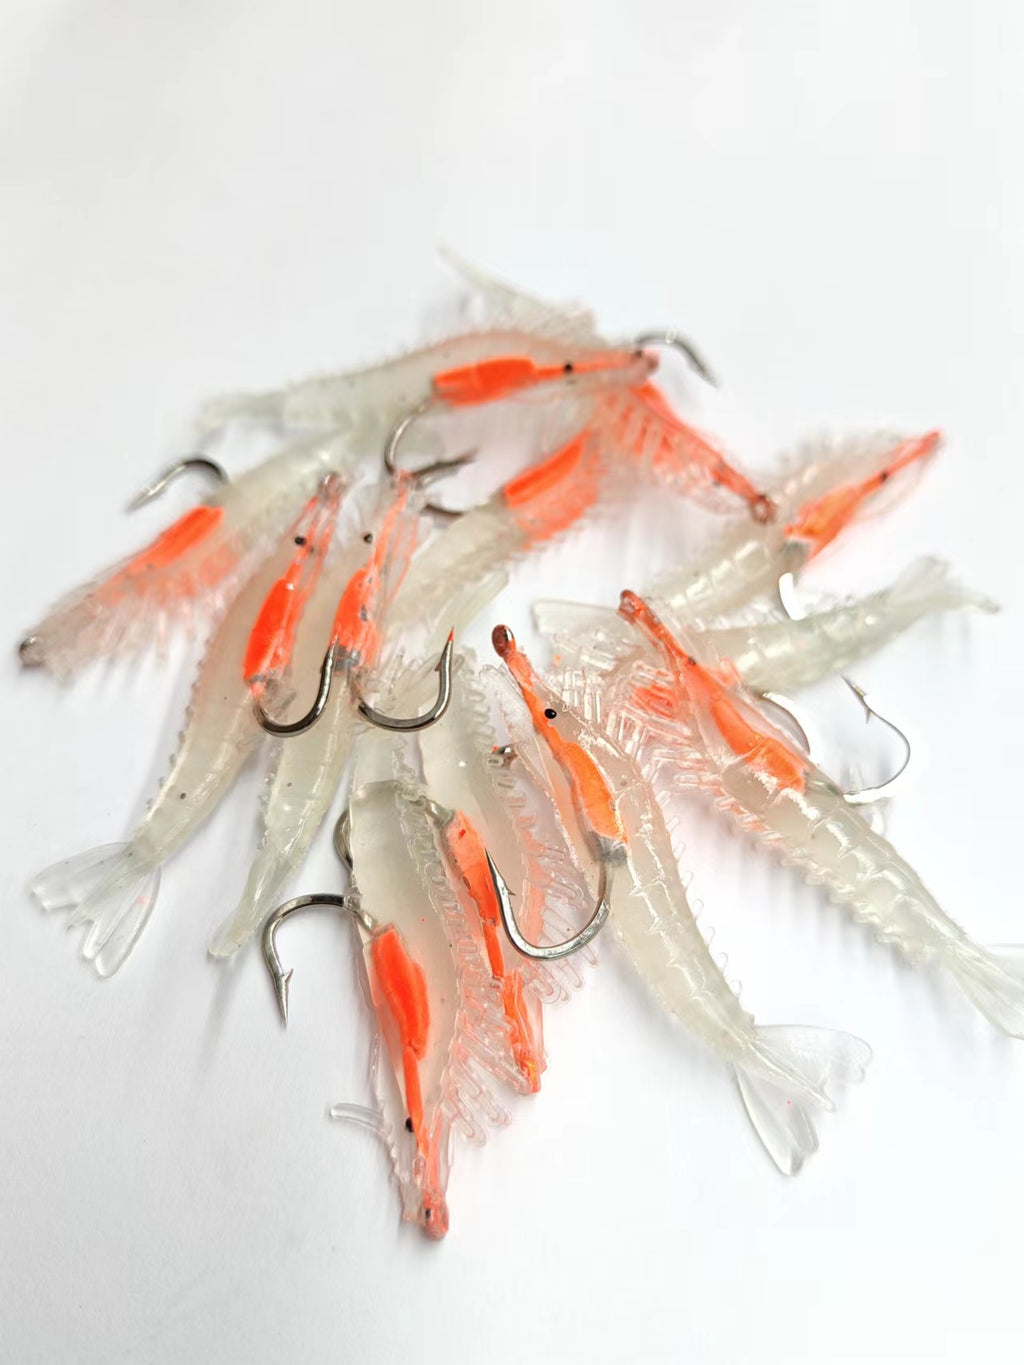 LADAEN 10pcs Shrimp Bait Fishing Lure 4cm Small Artificial Shrimp